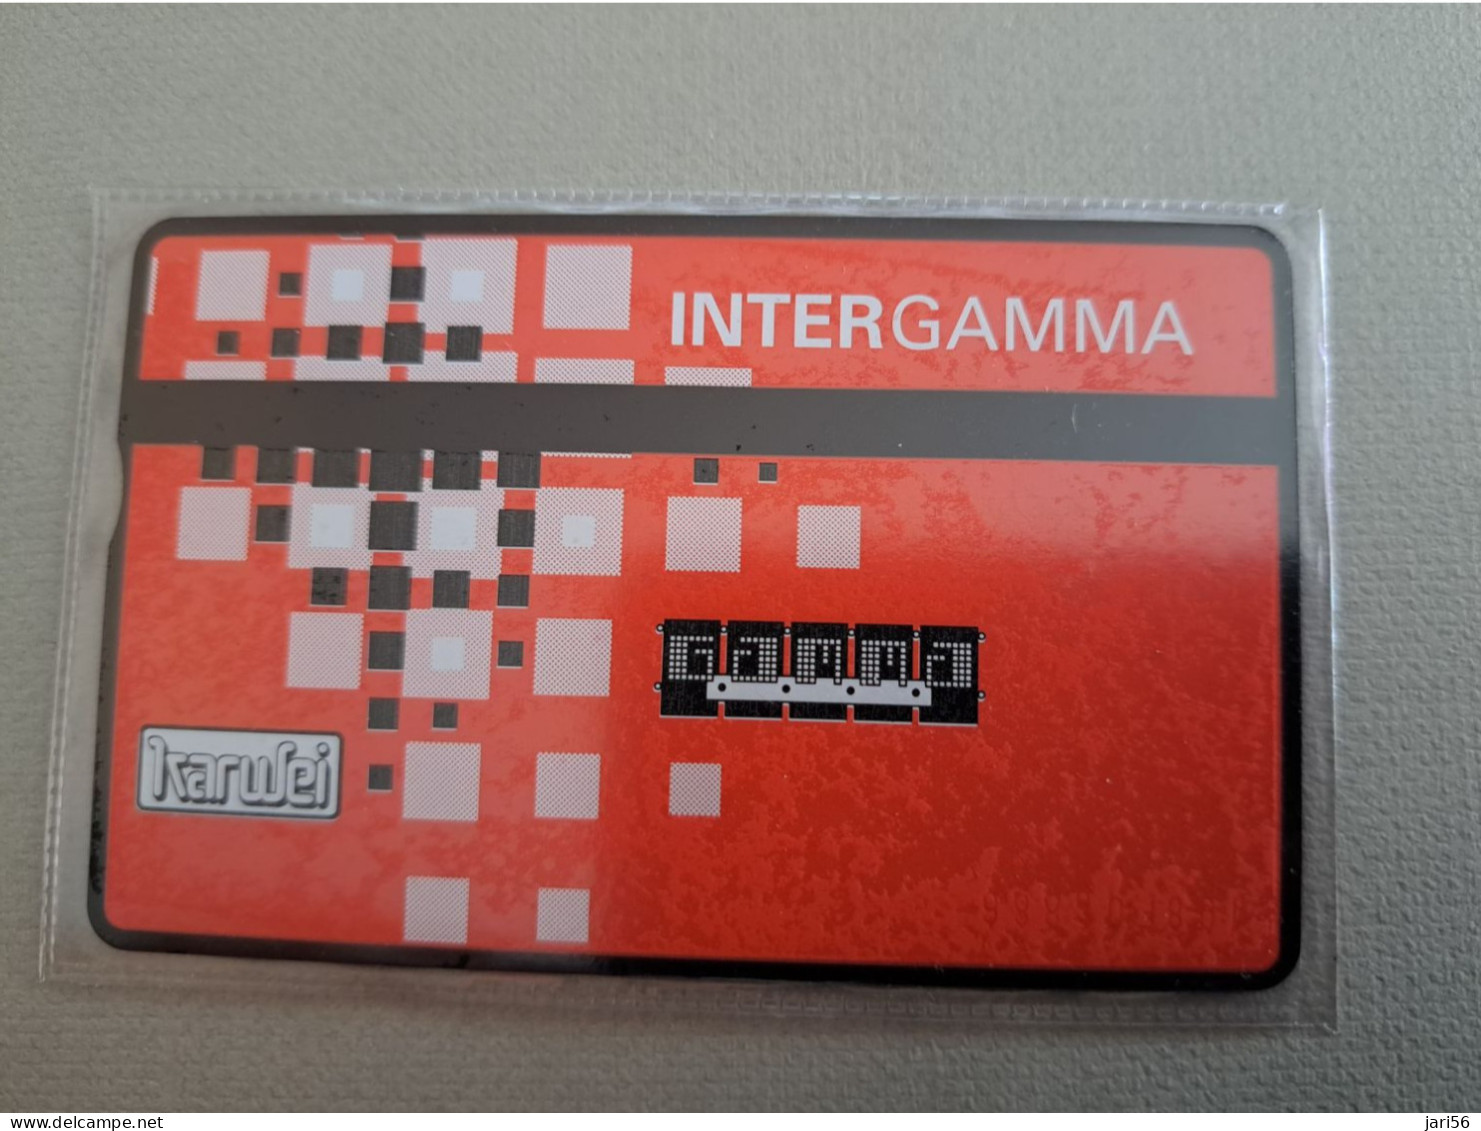 NETHERLANDS  115  UNITS /  INTERGAMMA / KARWEI / GAMMA    / RDZ 143 /  RRR/  MINT  ** 14213** - [3] Sim Cards, Prepaid & Refills